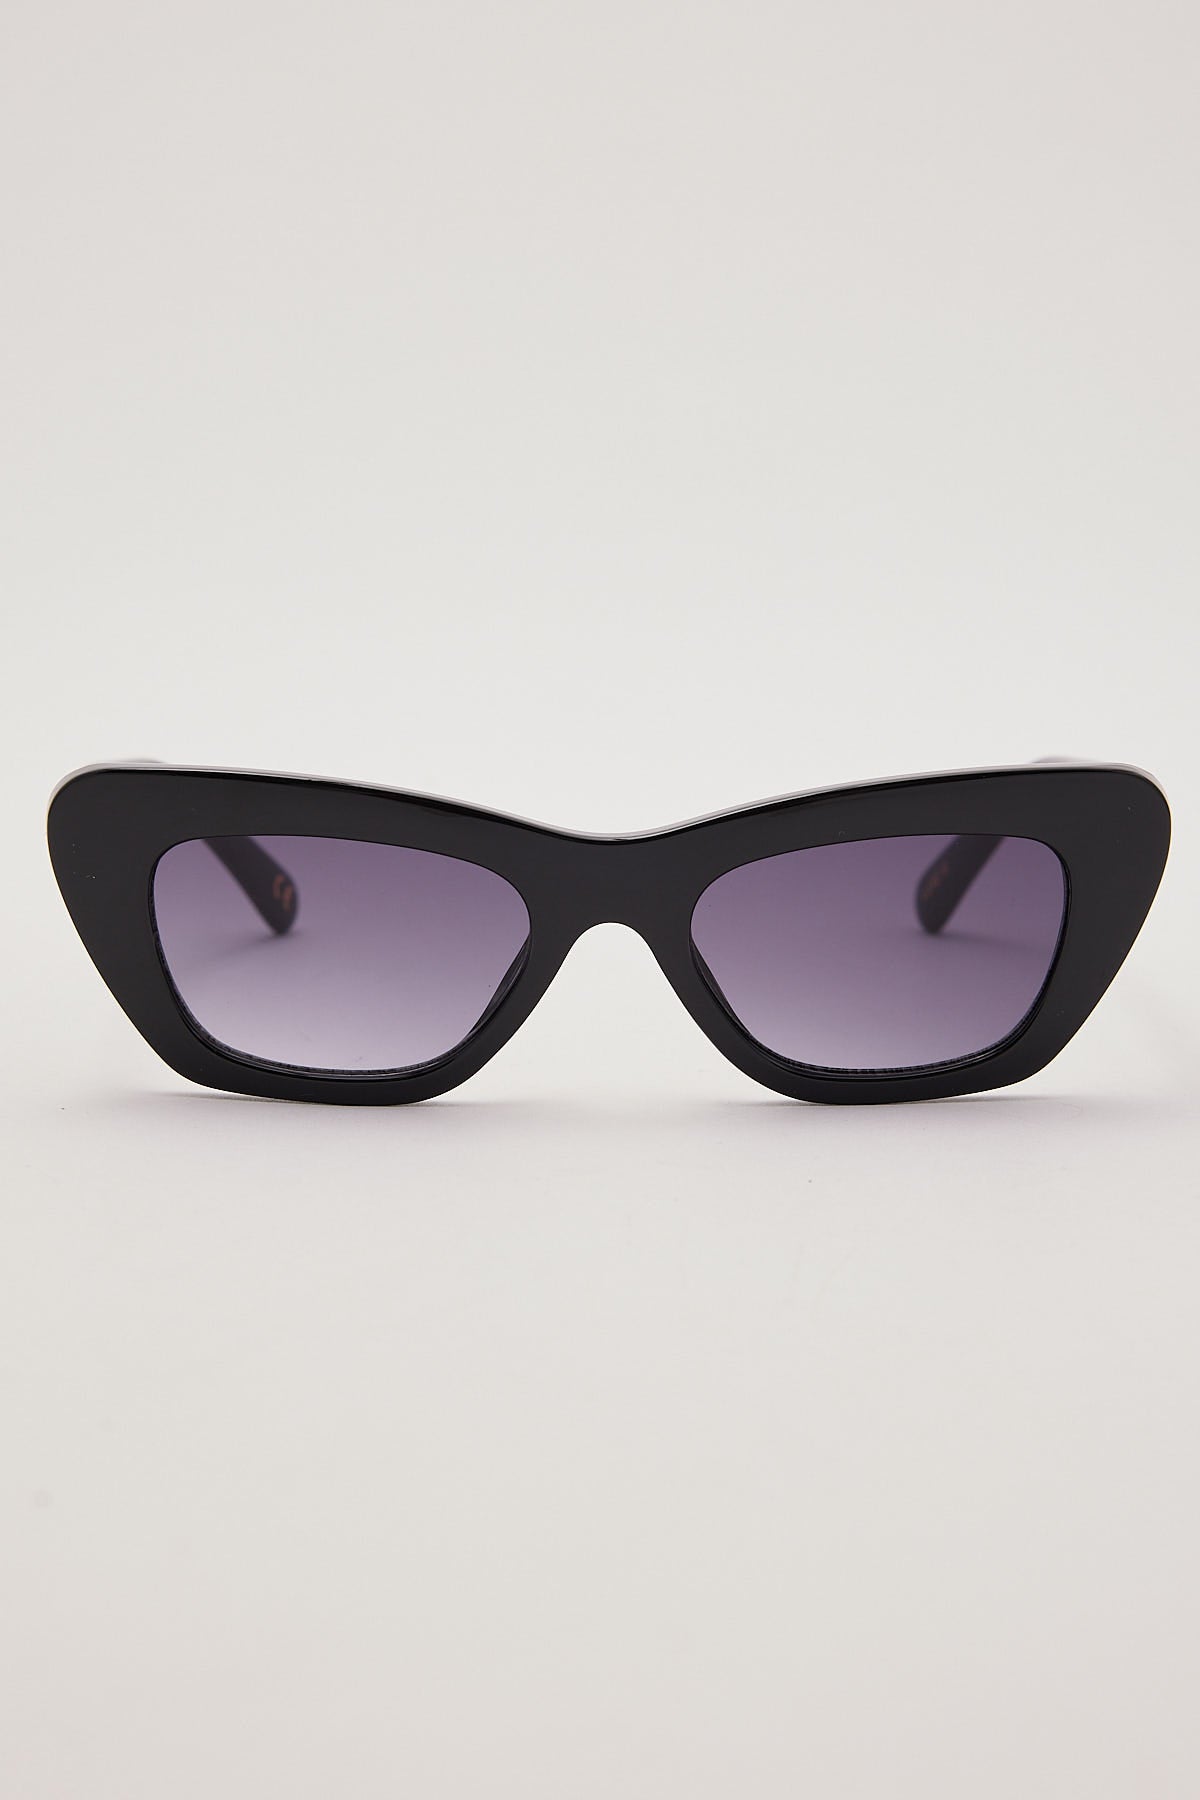 Reality Eyewear Luxe 3 Black